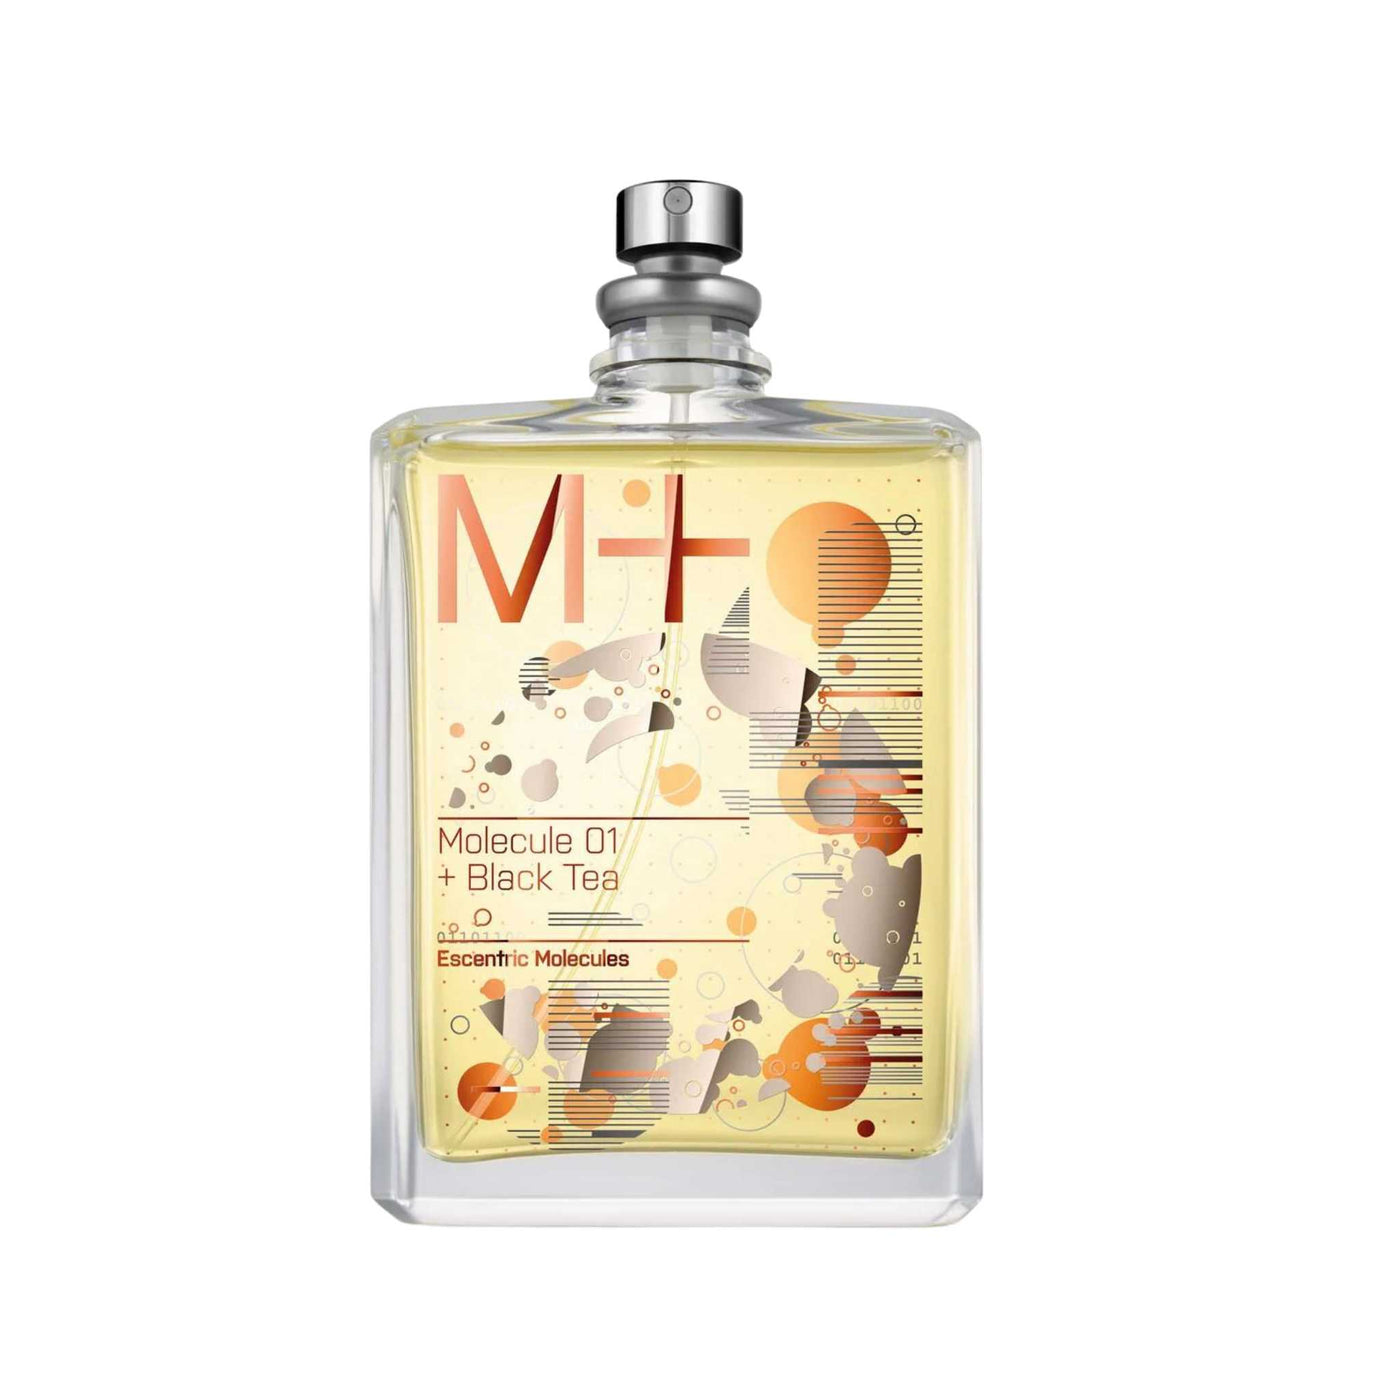 Molecule 01 + Black Tea perfume